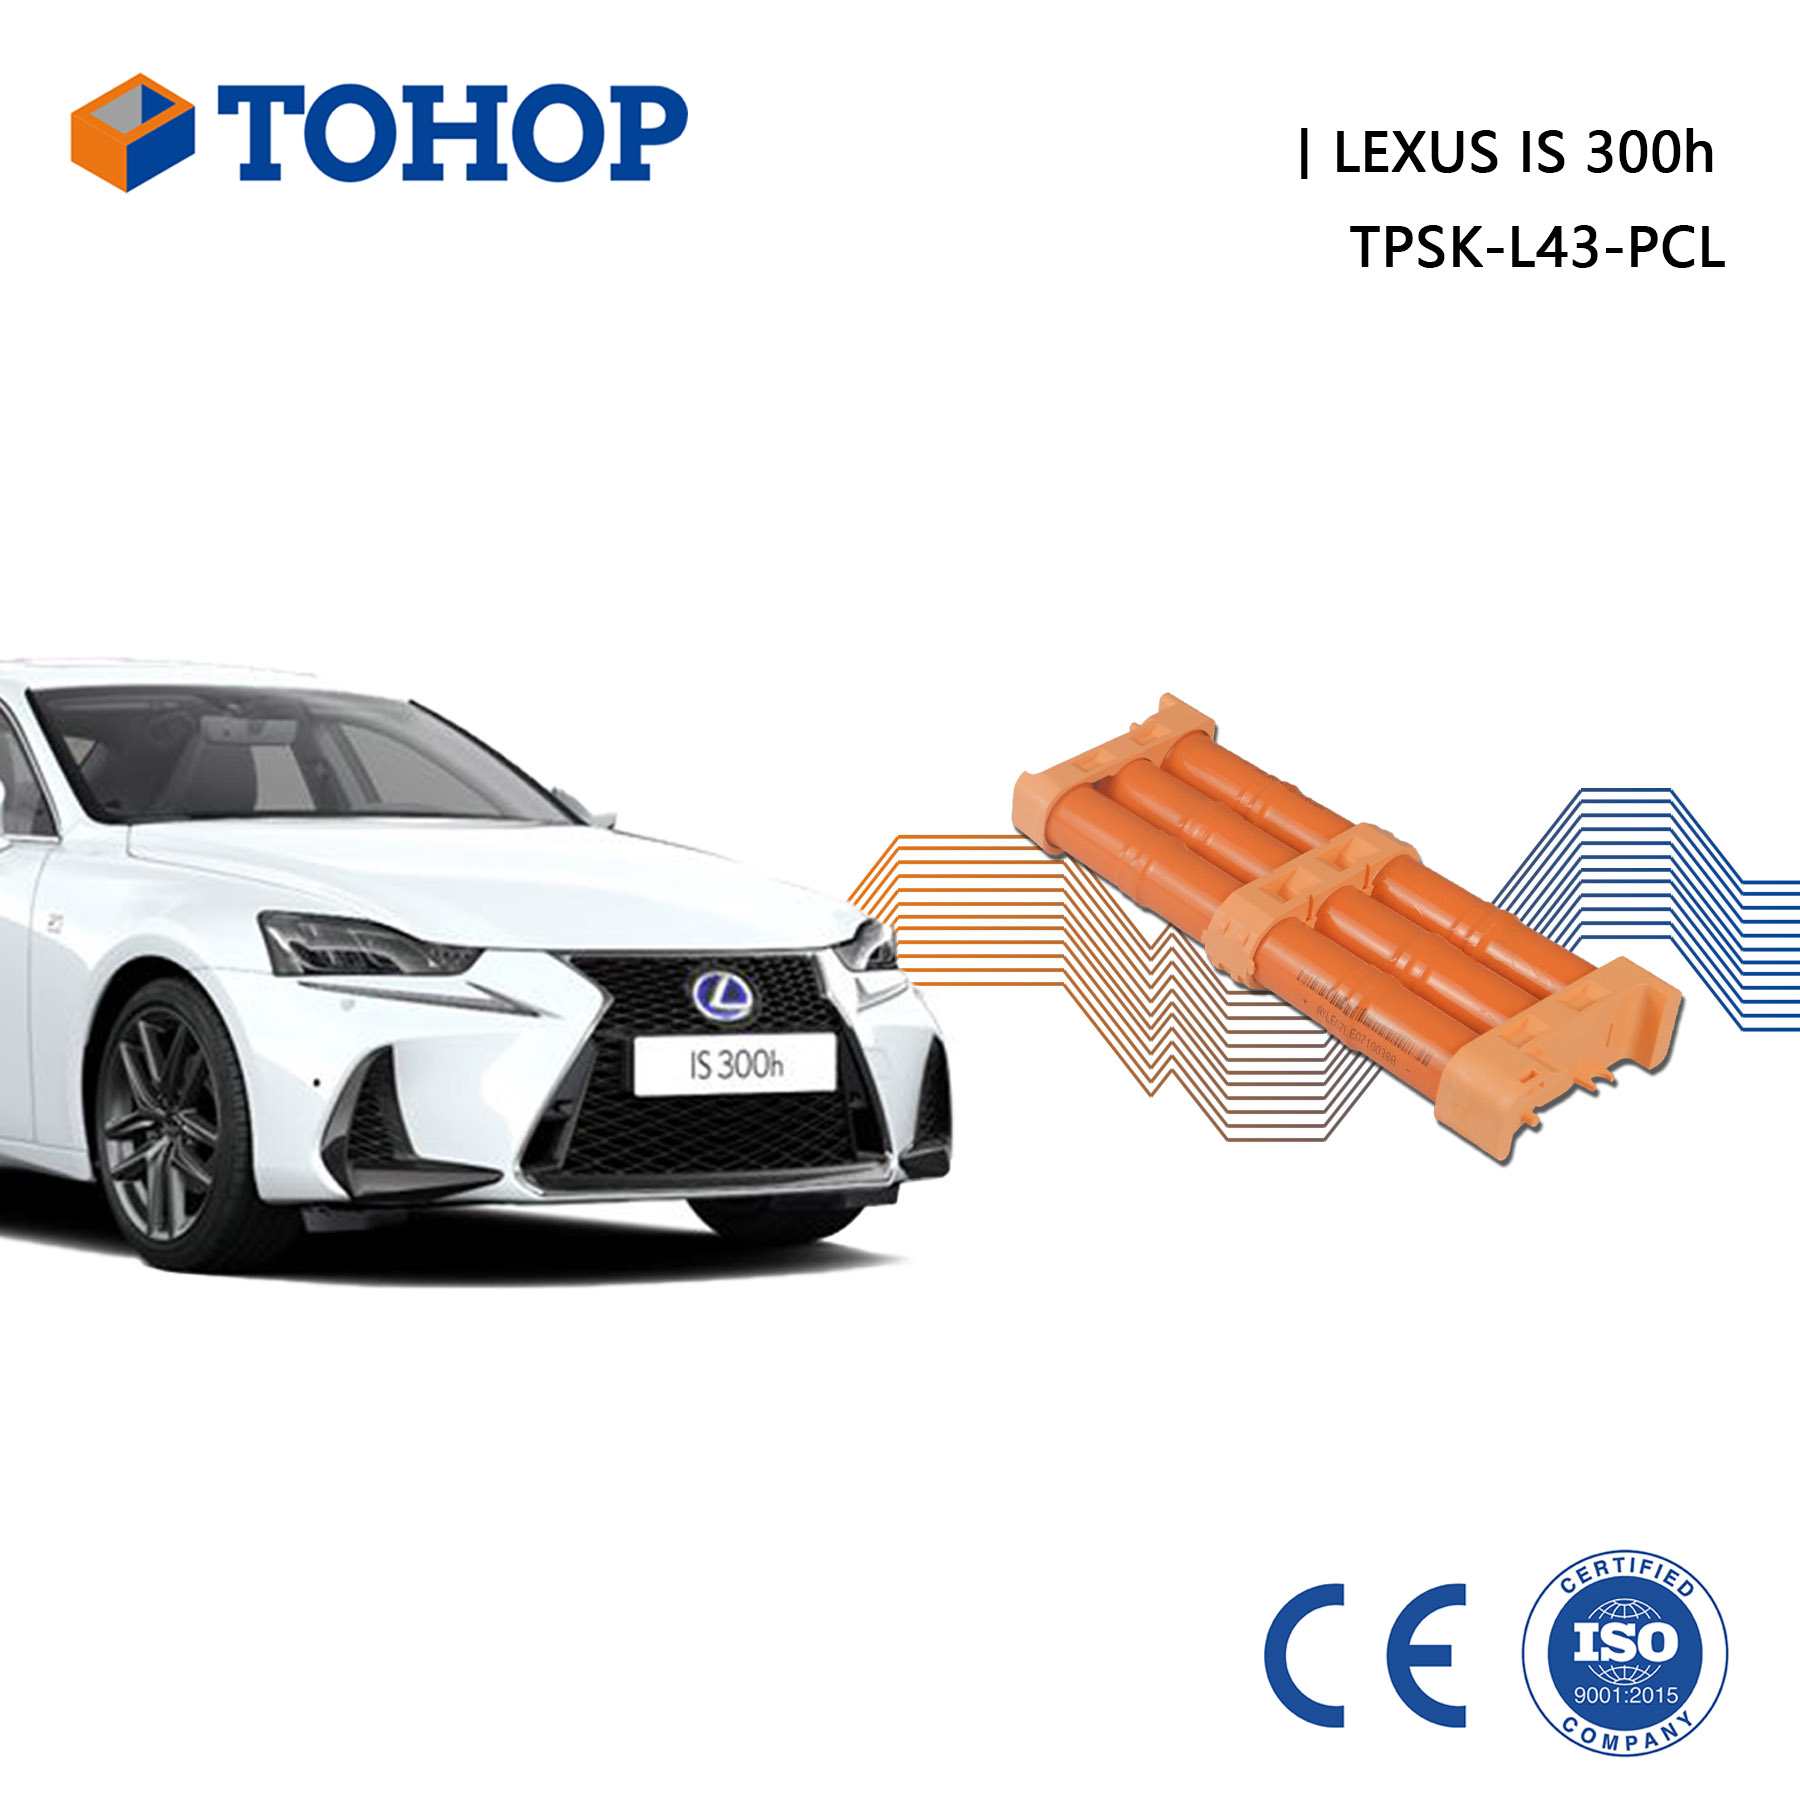 TOHOP Lexus IS 300h Reemplazo de batería híbrida 14.4V 6.5Ah Nueva celda NiMH